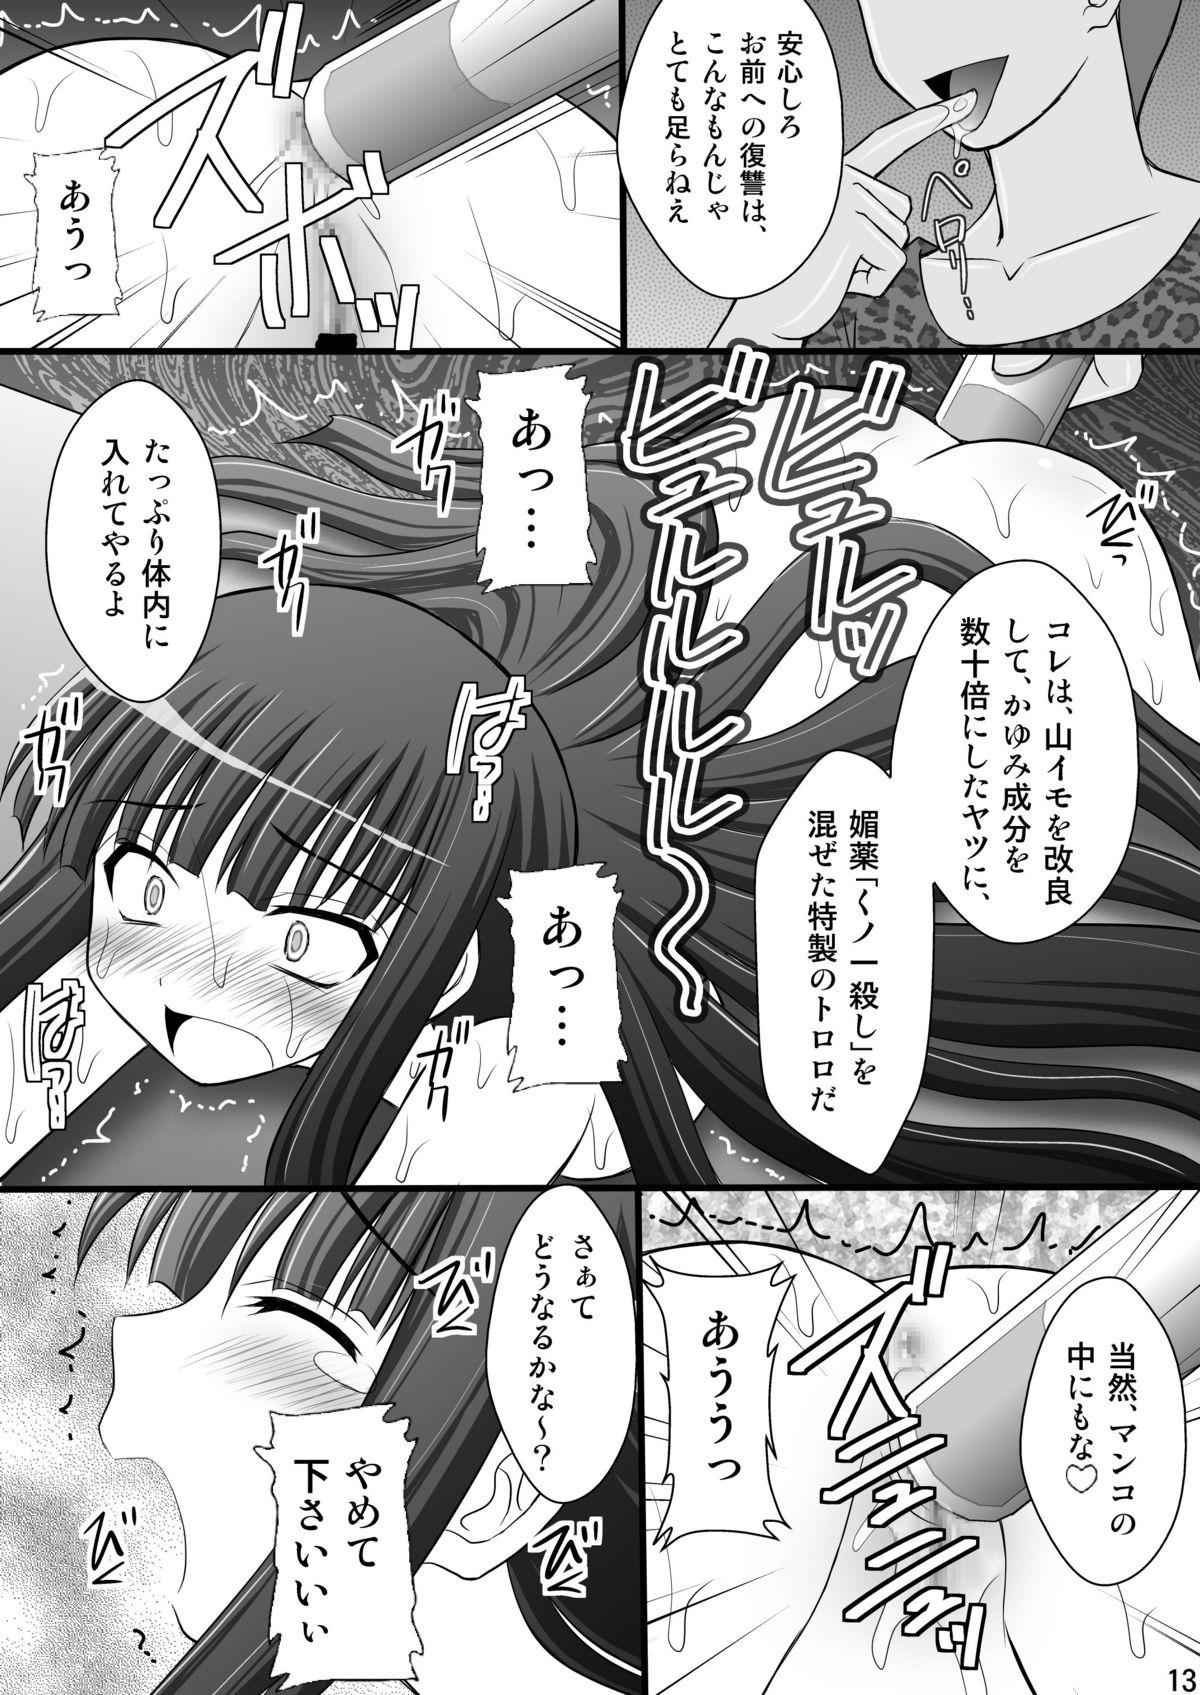 Throat Otome Kunoichi Monzetsu Goumon Jigoku Emaki - Inran Mode Sono Ni "Ikaruga Yagyuu Hibari Hen" - Senran kagura Fingering - Page 12